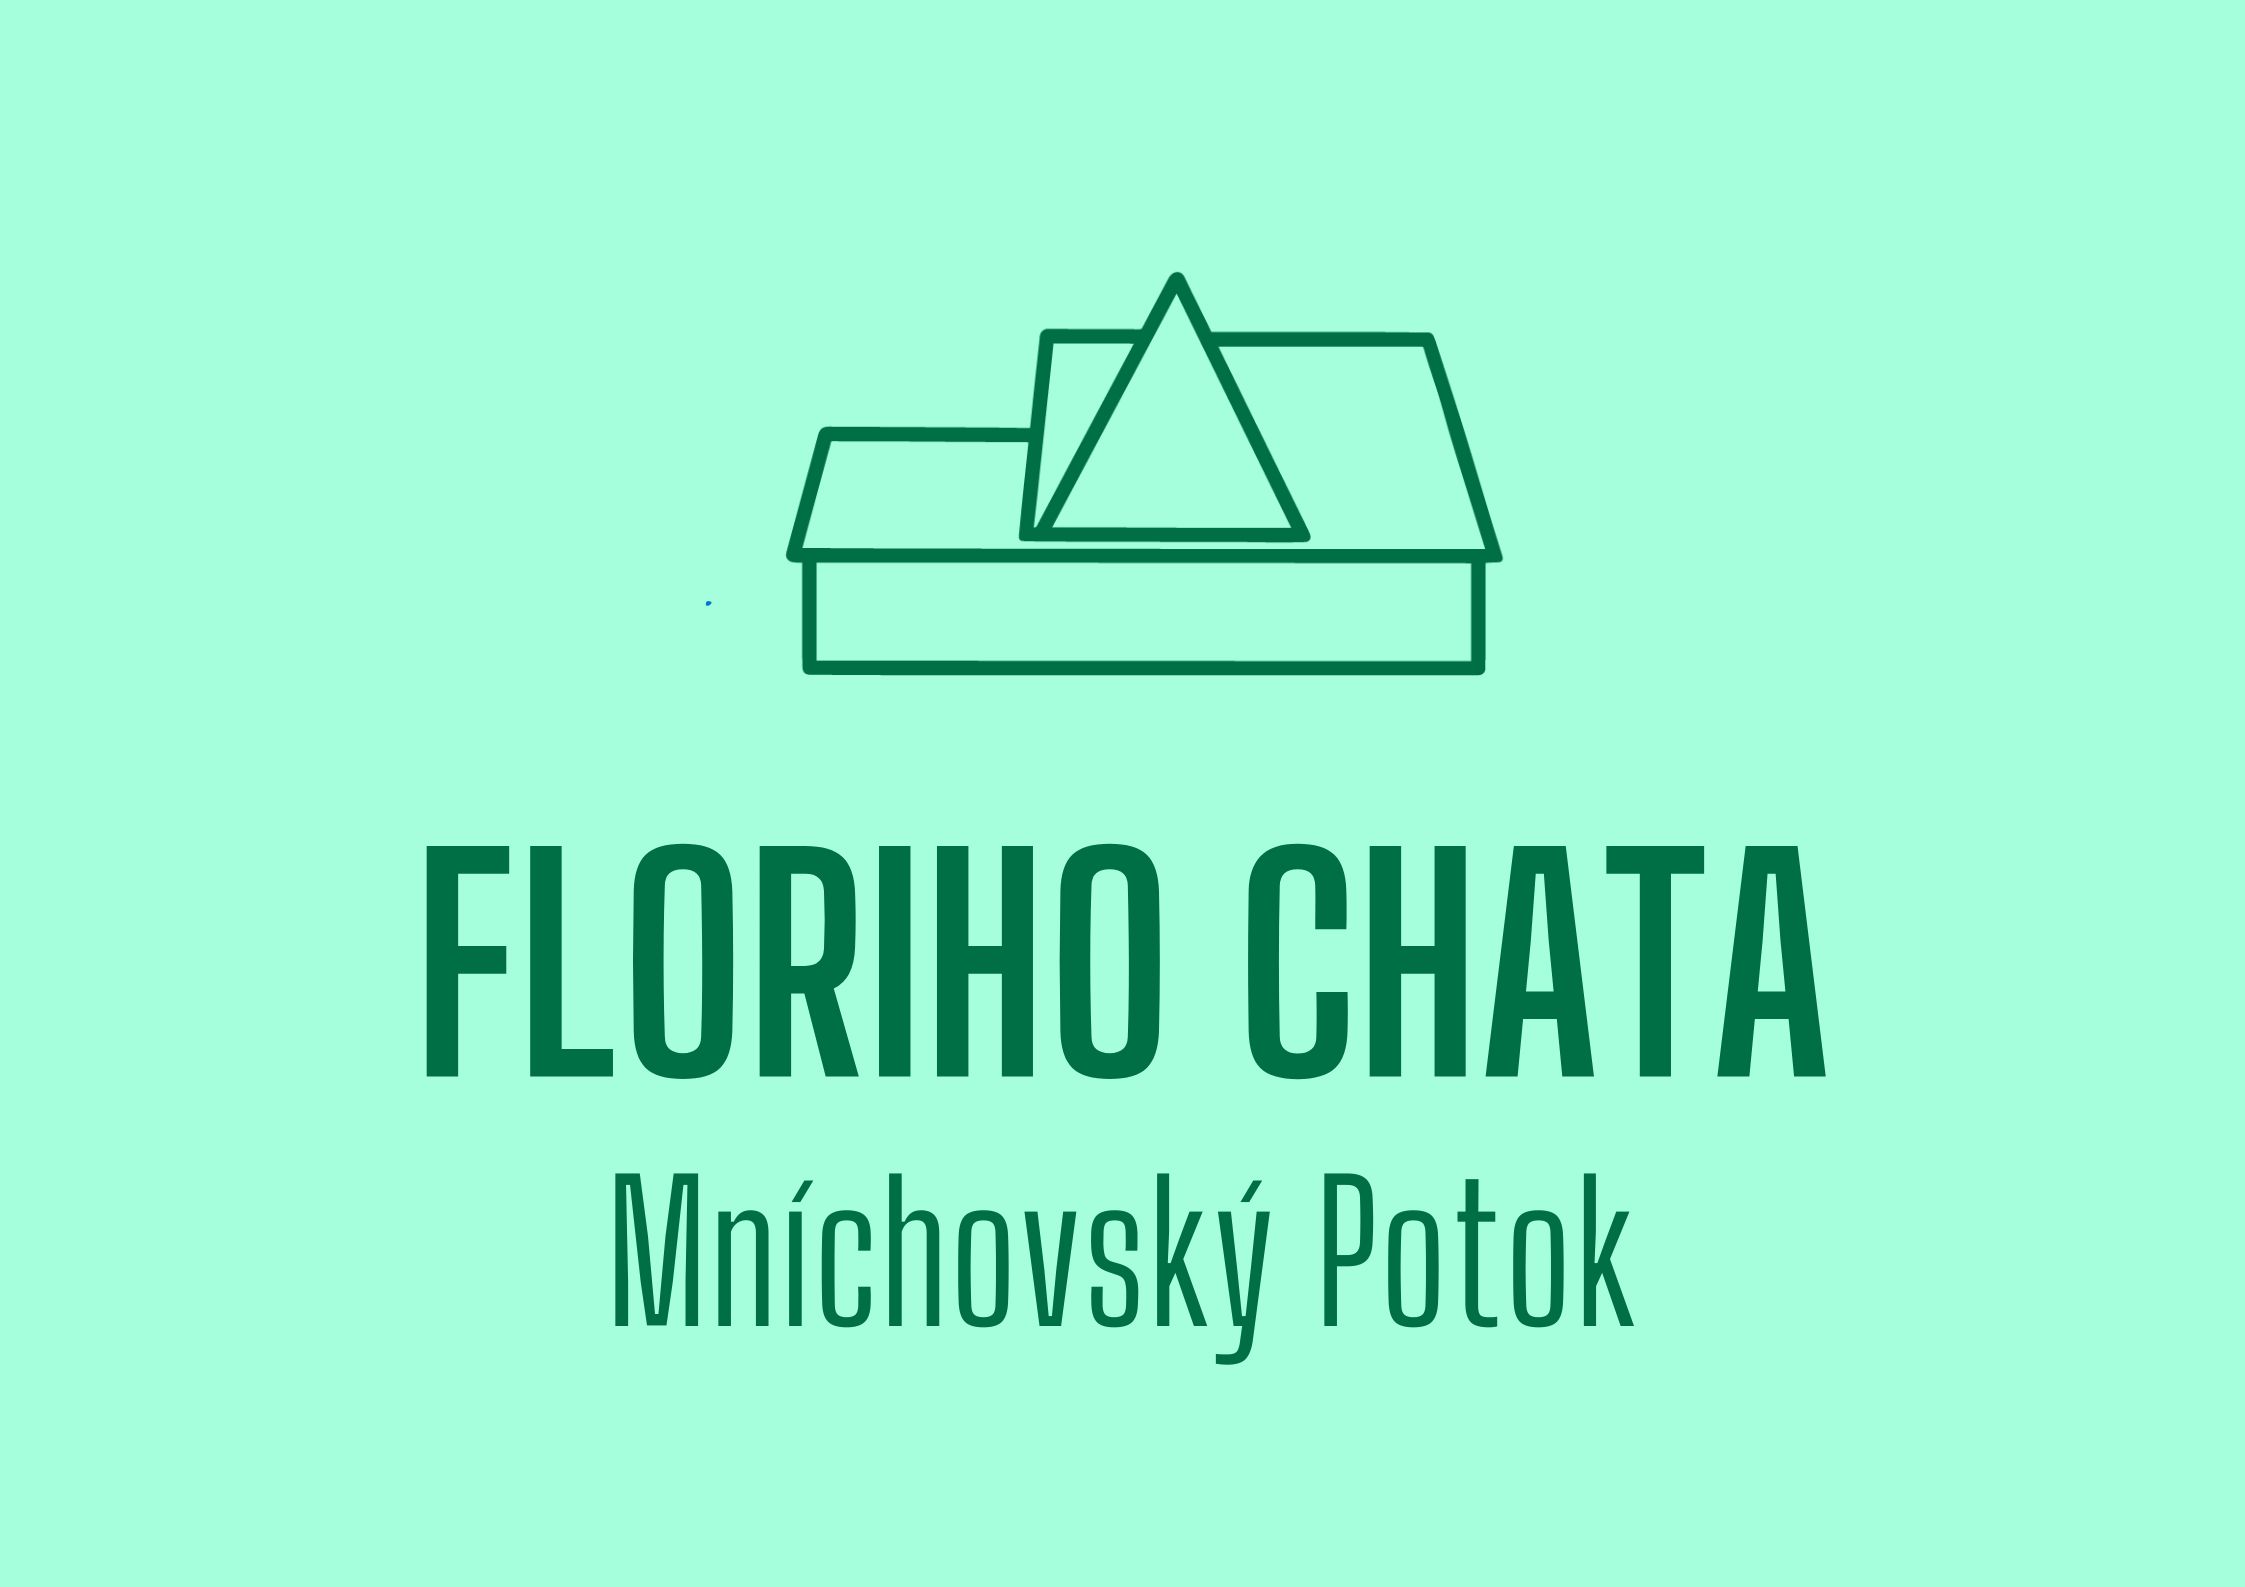 Floriho chata (3)